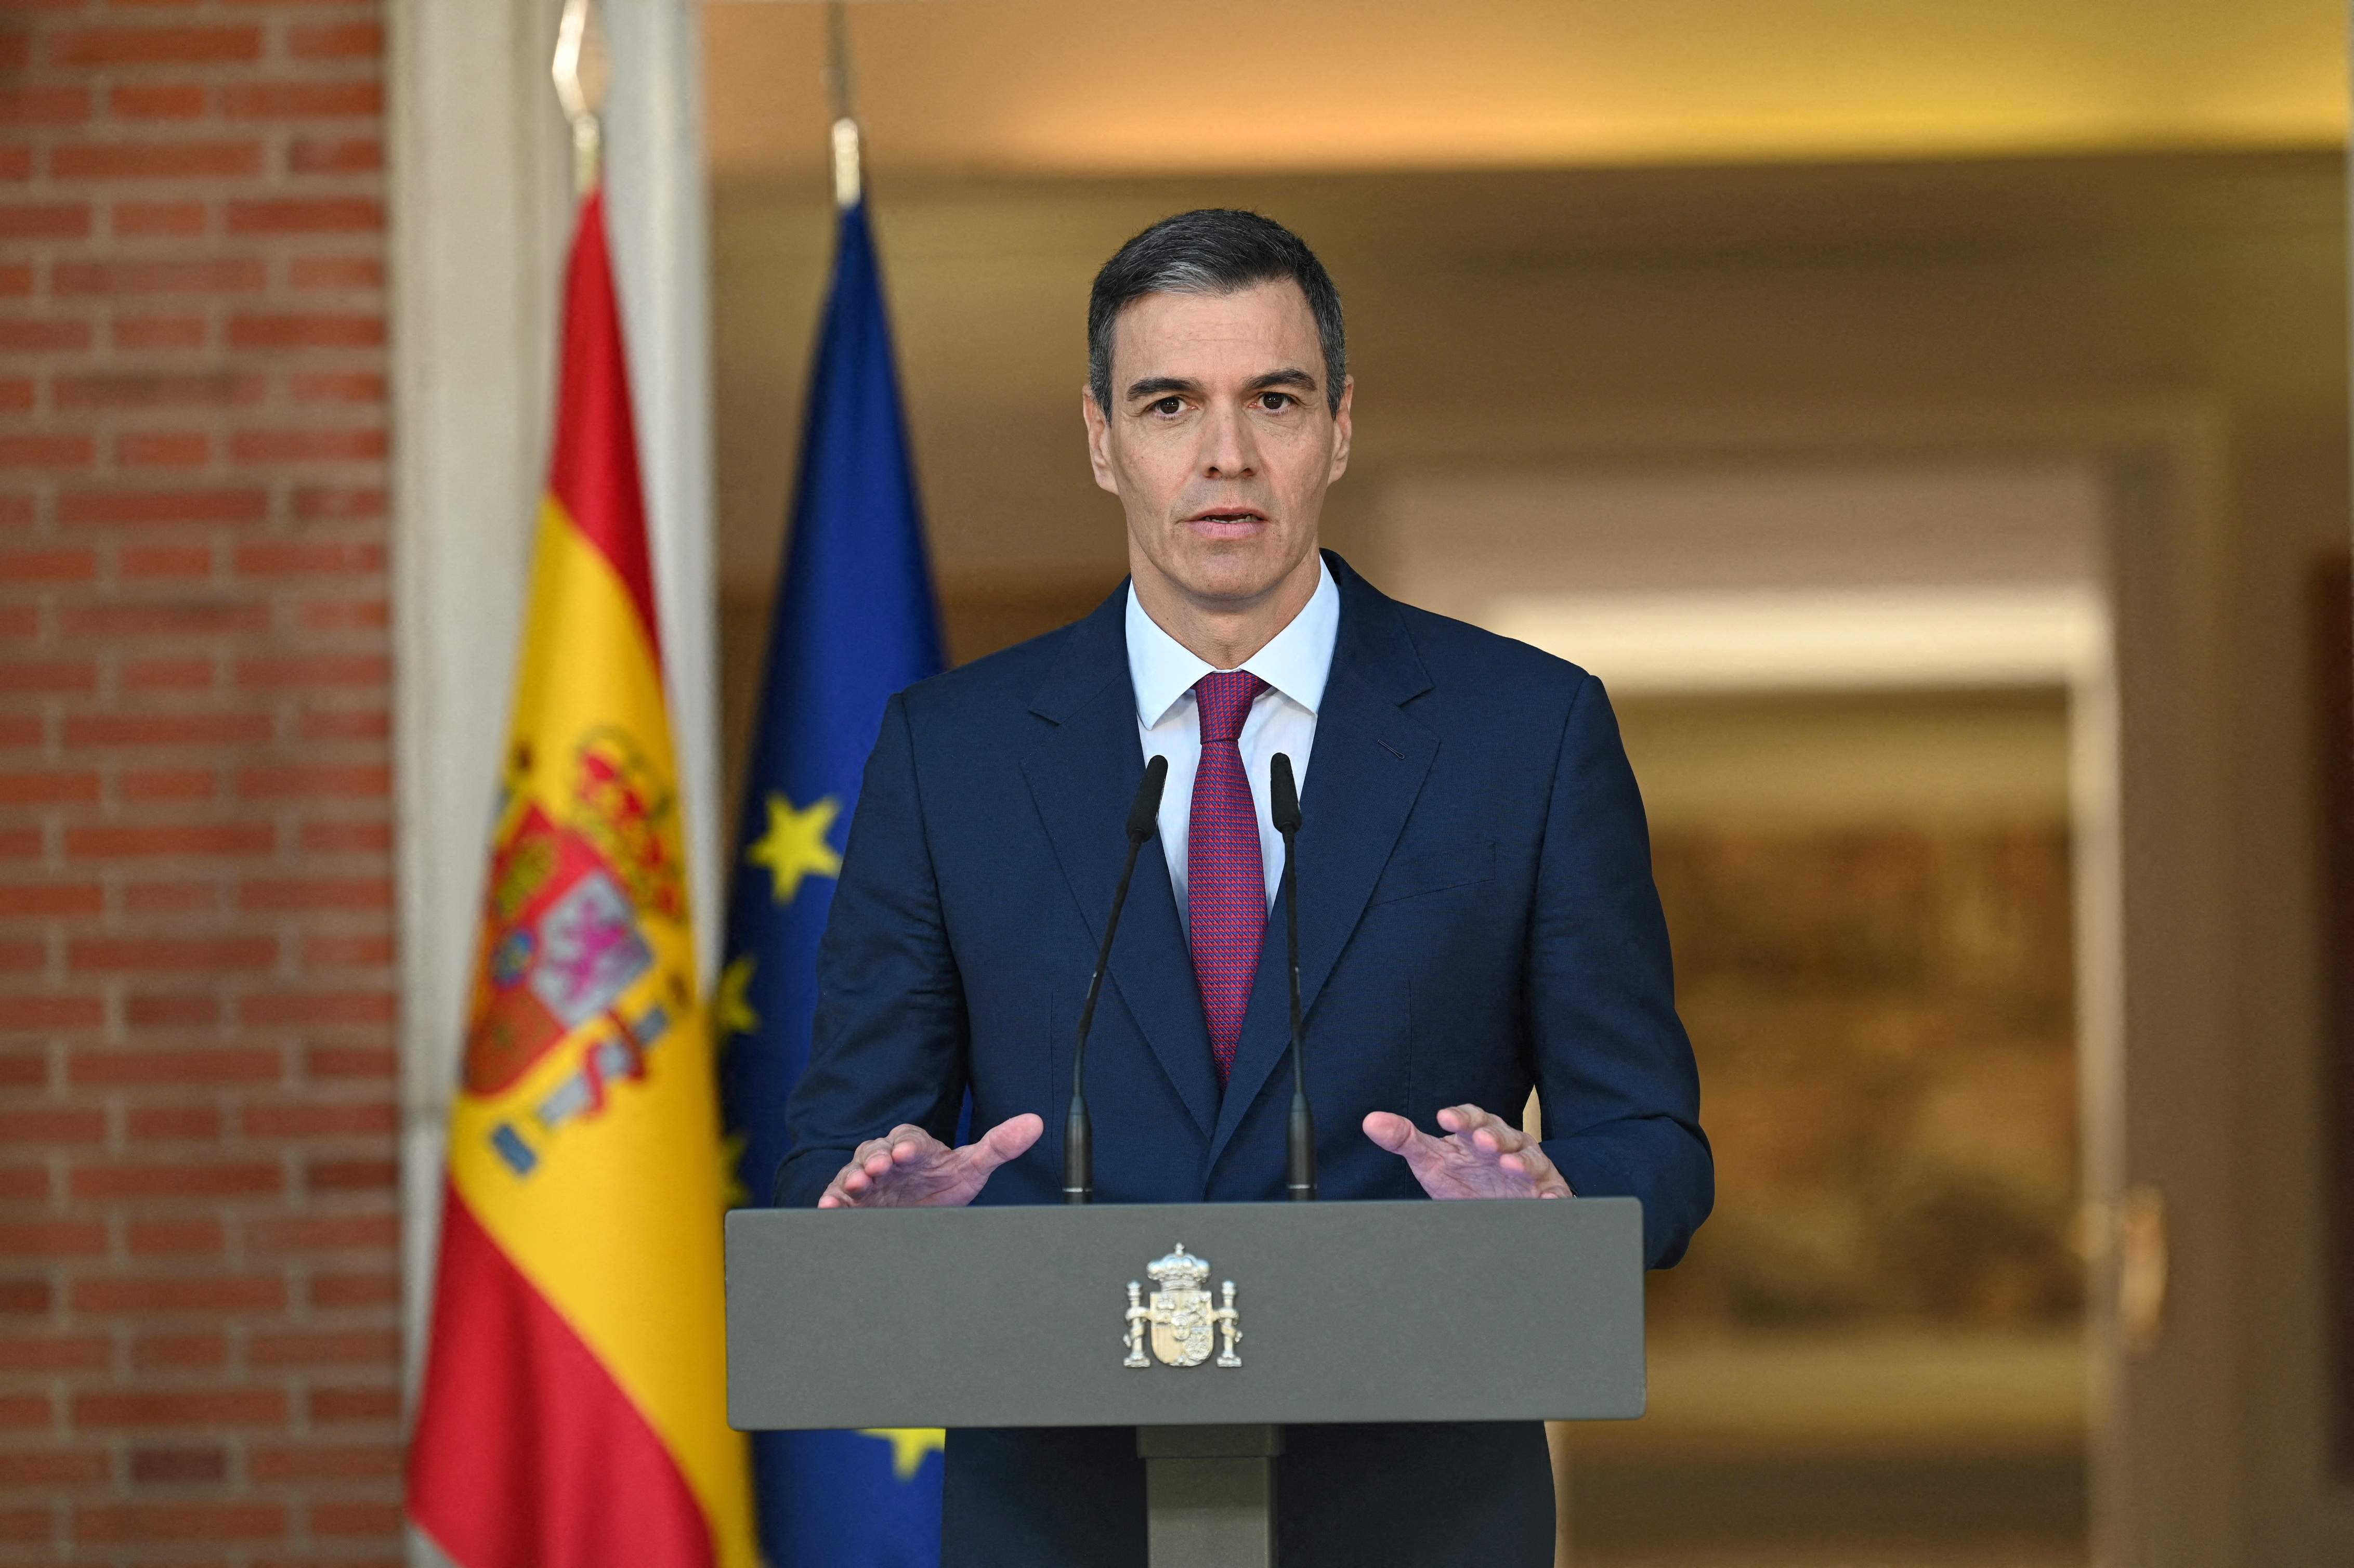 スペイン首相が続投表明、妻の汚職調査「根拠ない」